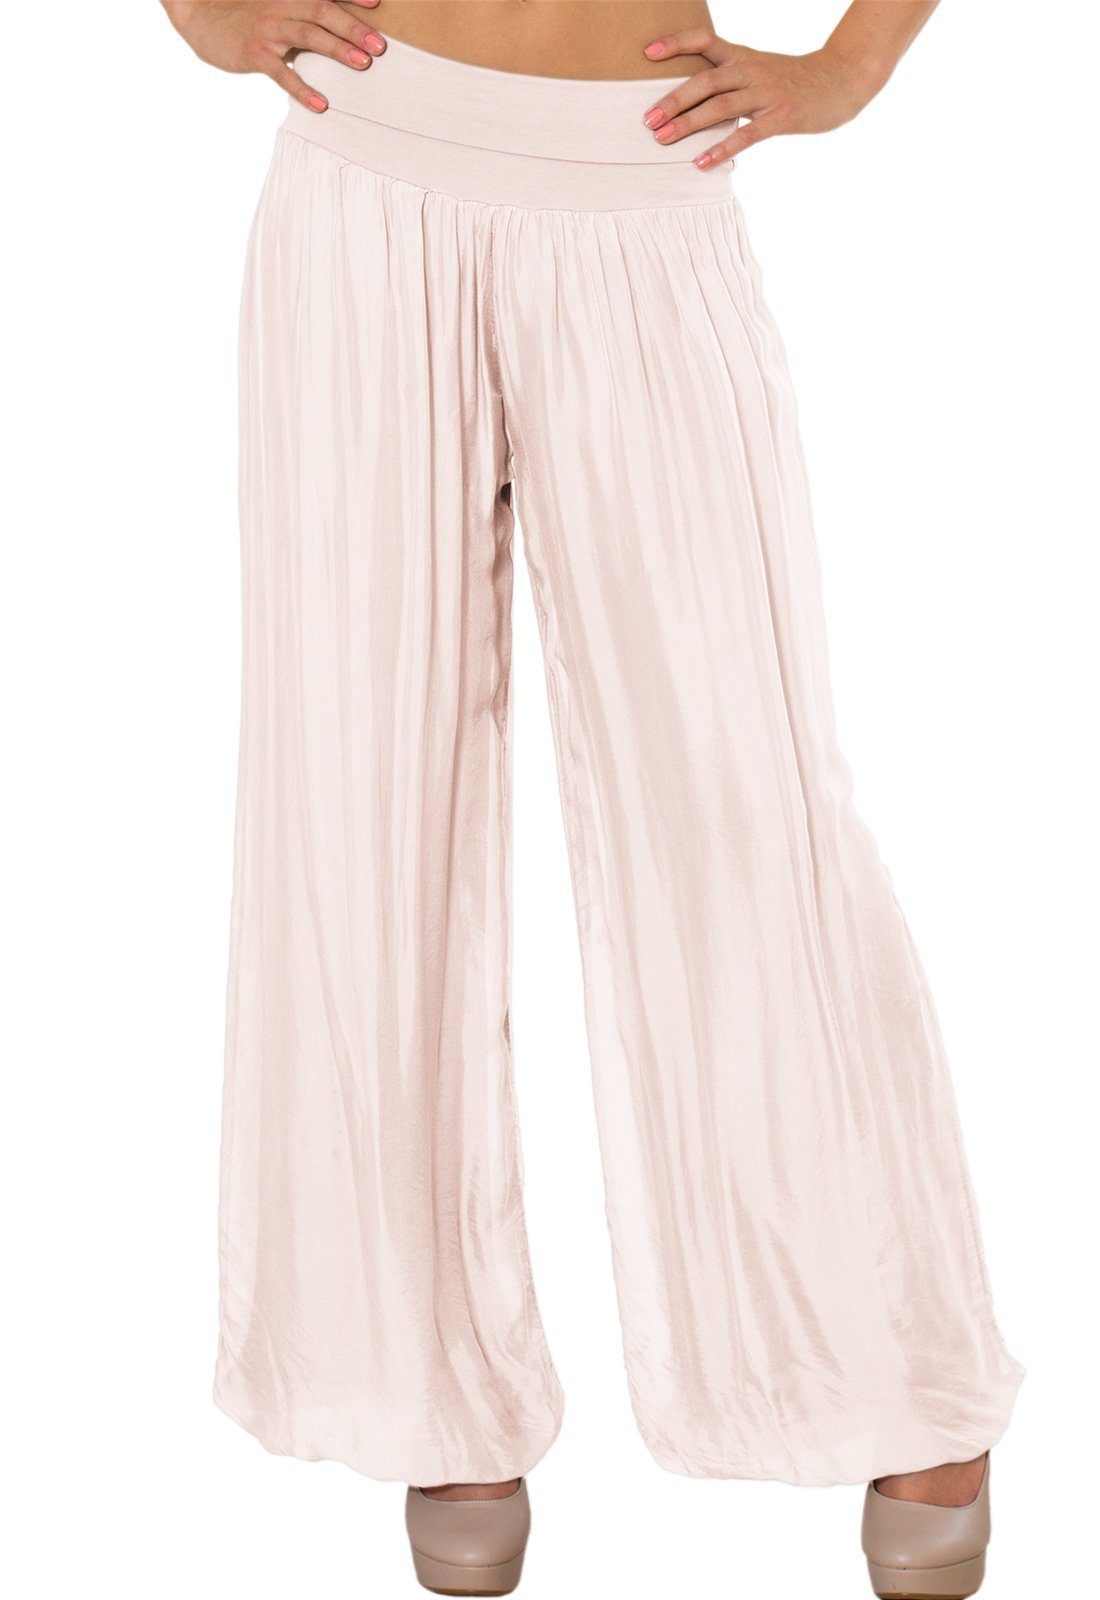 Caspar Palazzohose KHS010 elegante Damen Hose mit Seidenanteil und hohem Stretch Bund rosa